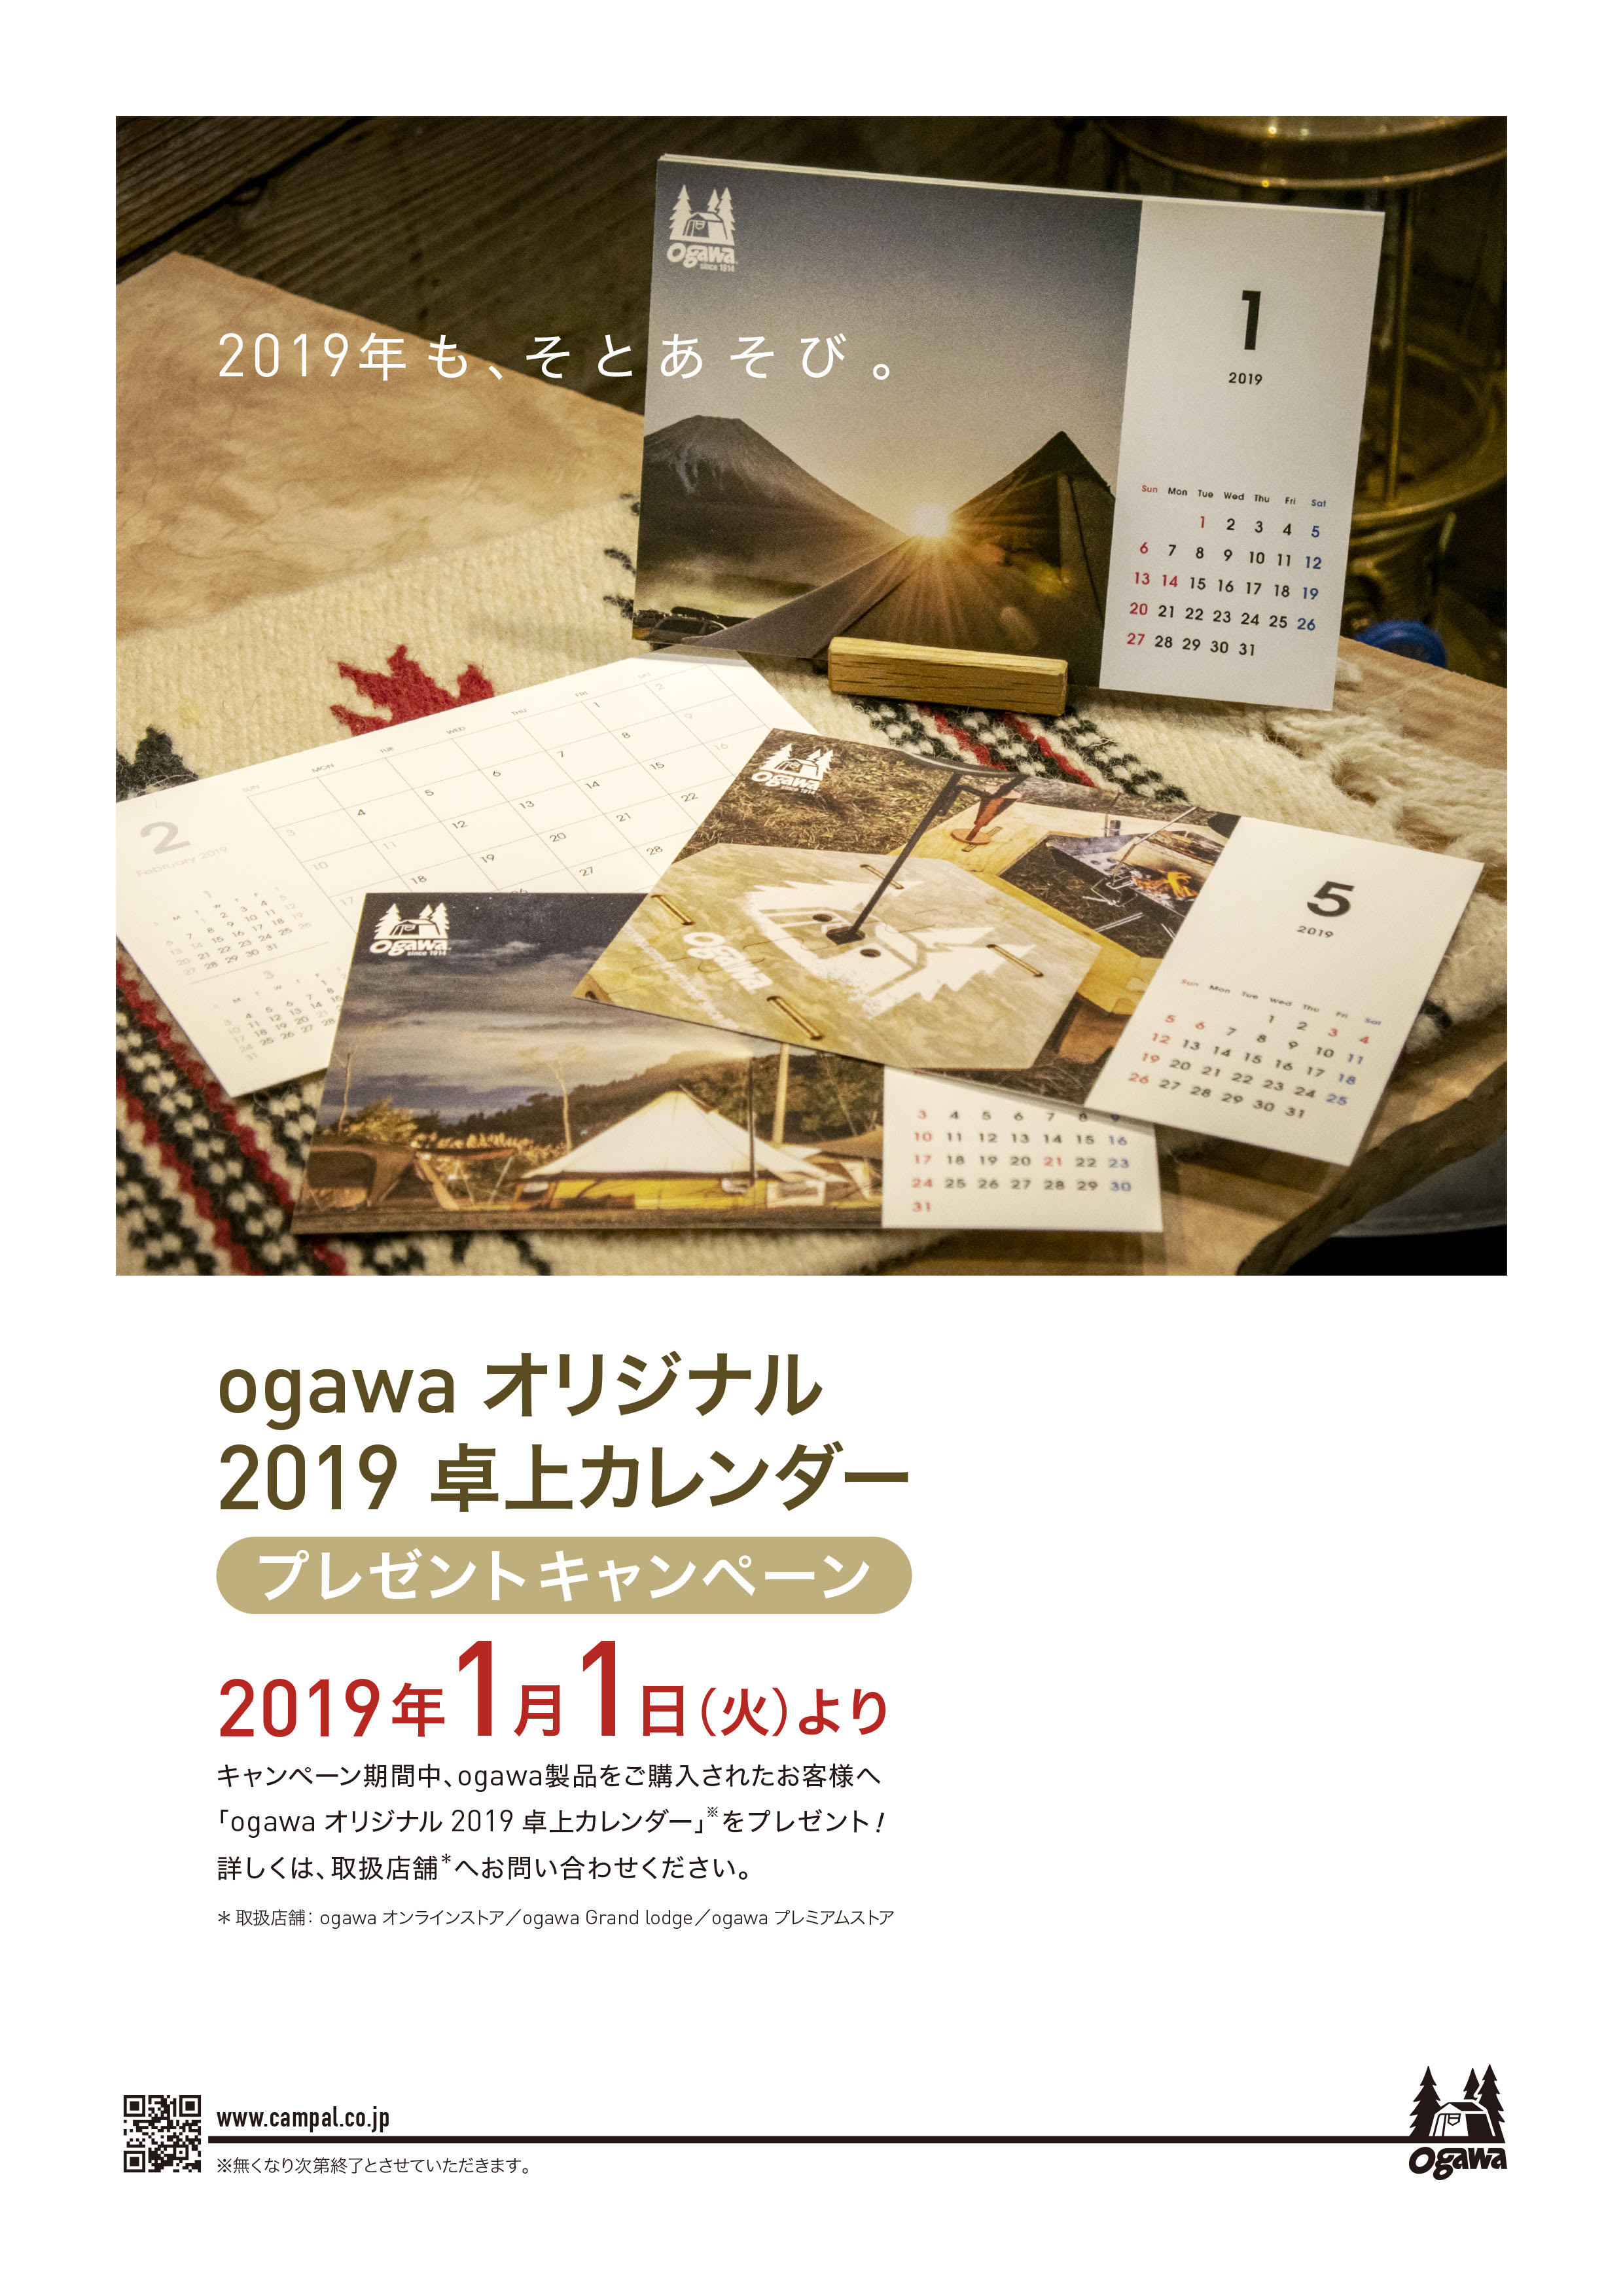 2019 Ogawaオリジナル卓上カレンダー プレゼントのお知らせ News